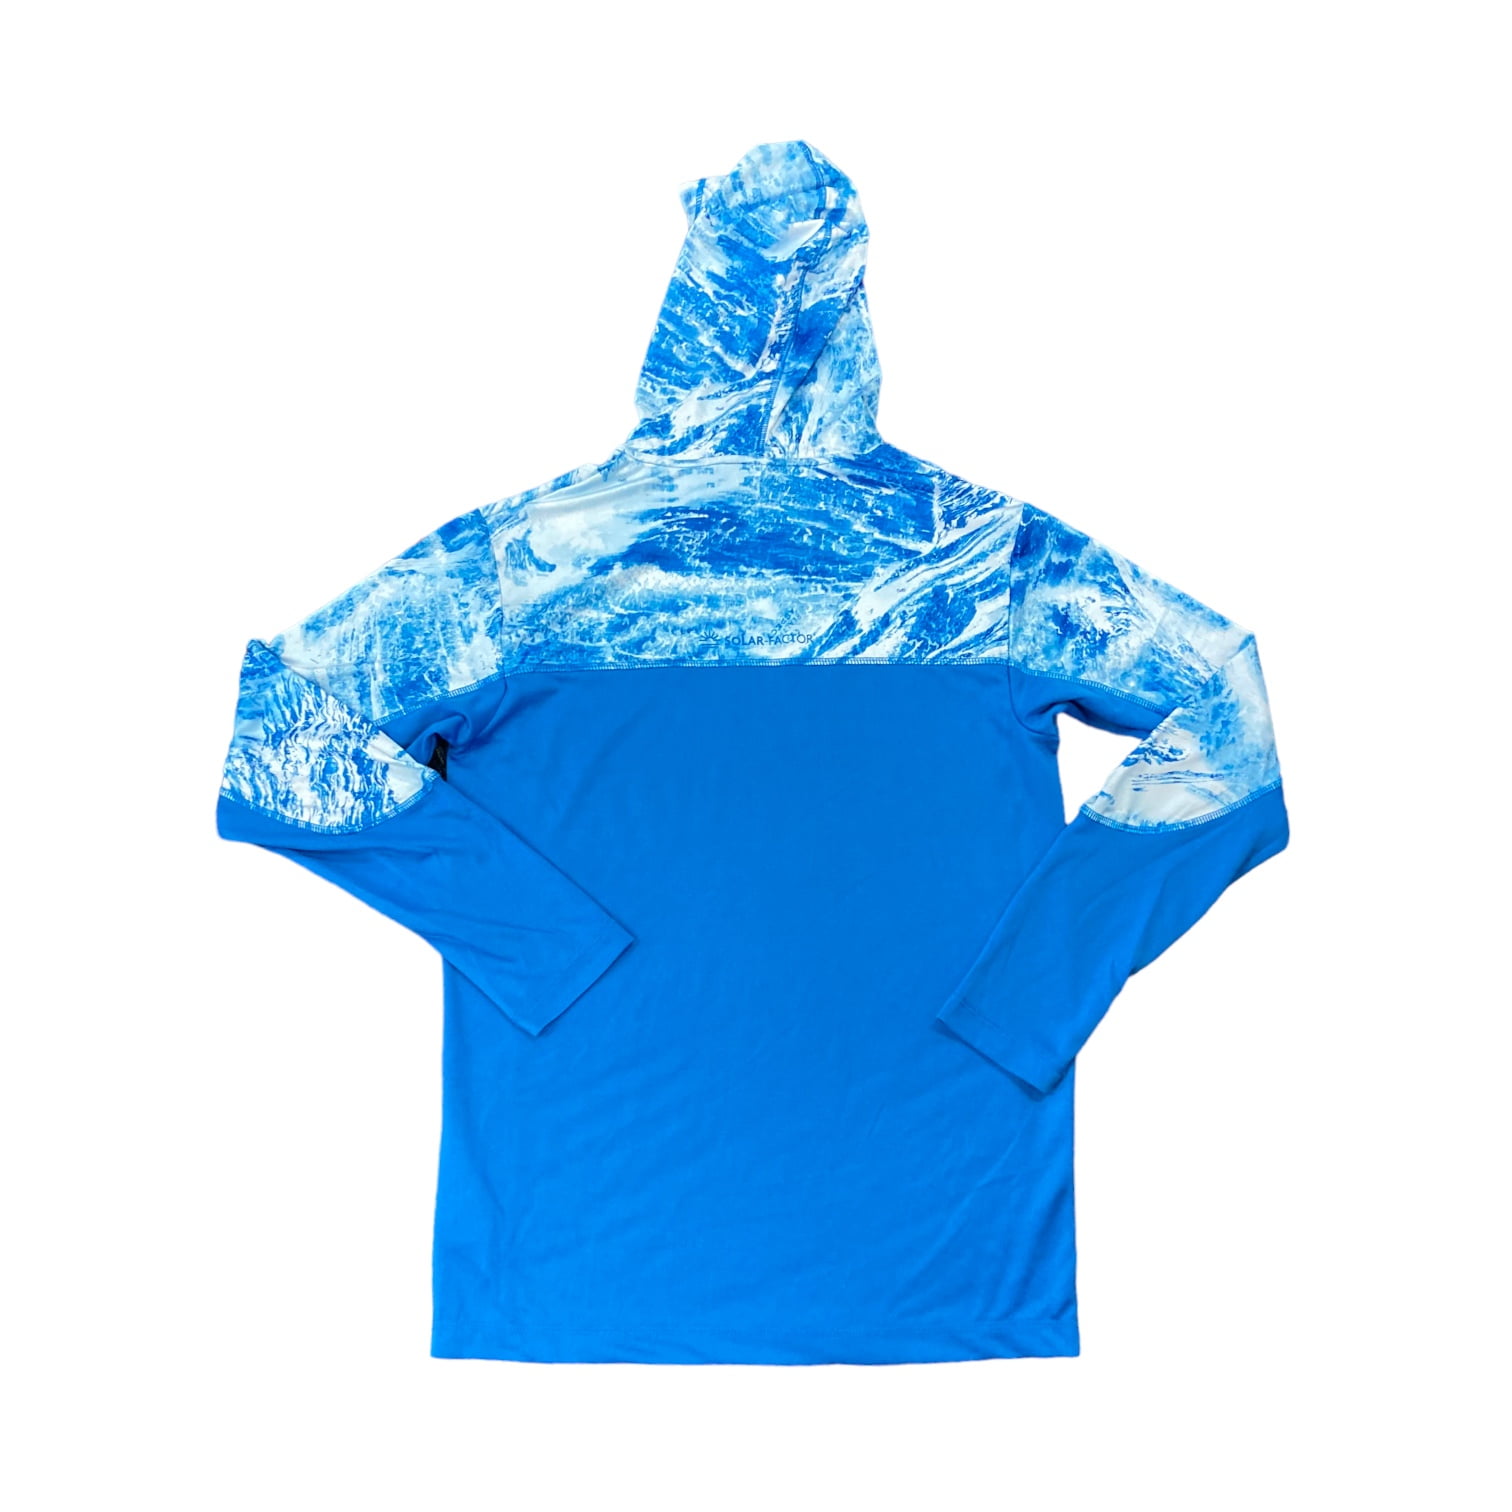 Habit Men's Hidden Cove Hooded Lightweight Performance Layer Shirt (RT  Aspect Open Sea/Directoire Blue, M)